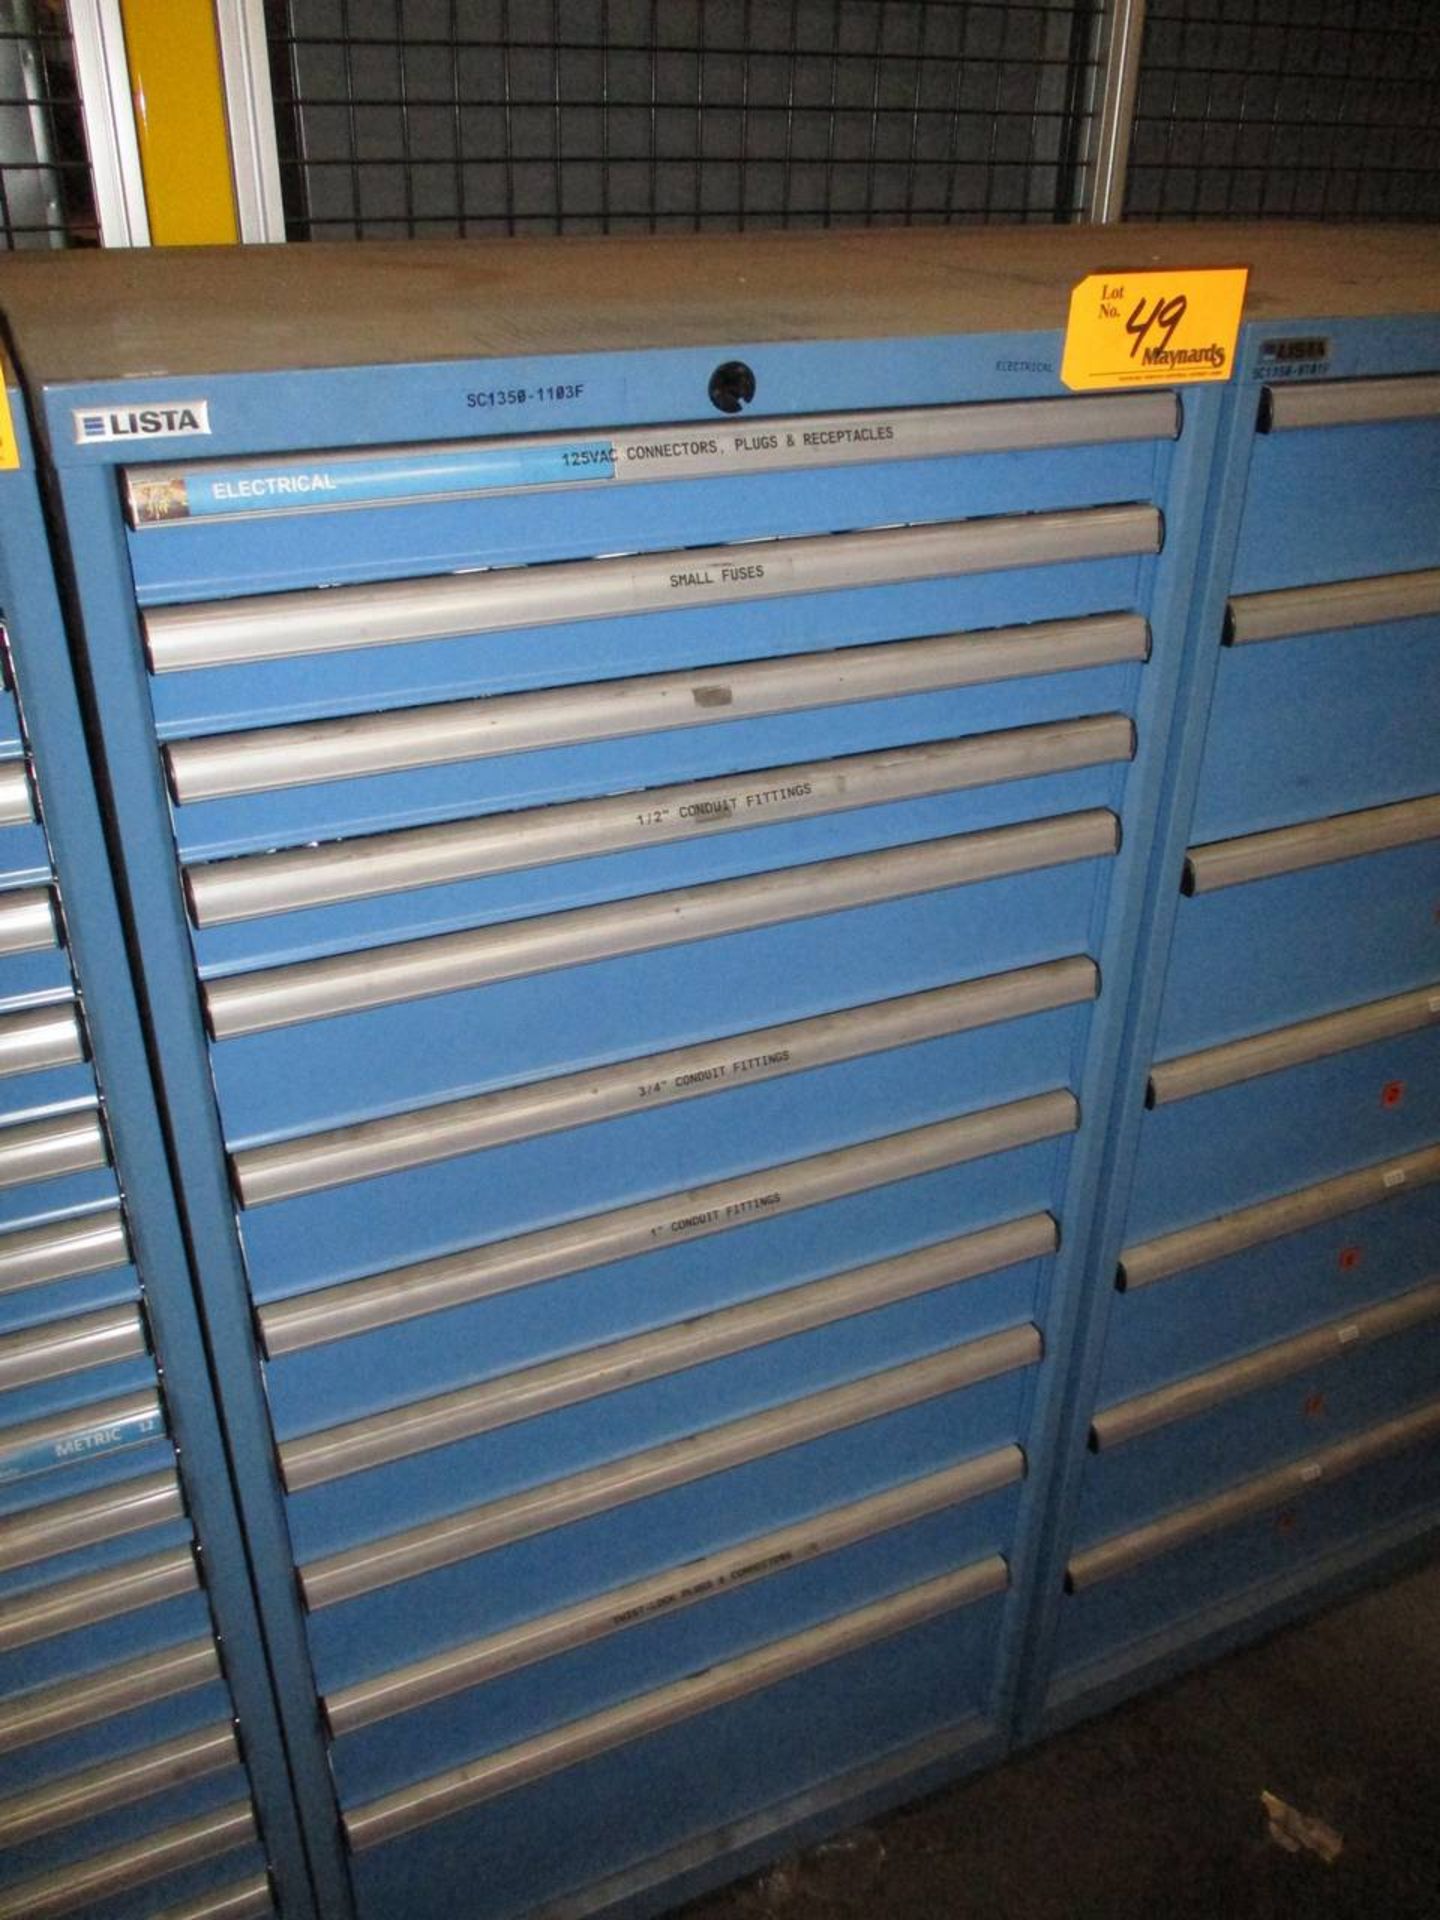 Lista 11-Drawer Storage Cabinet